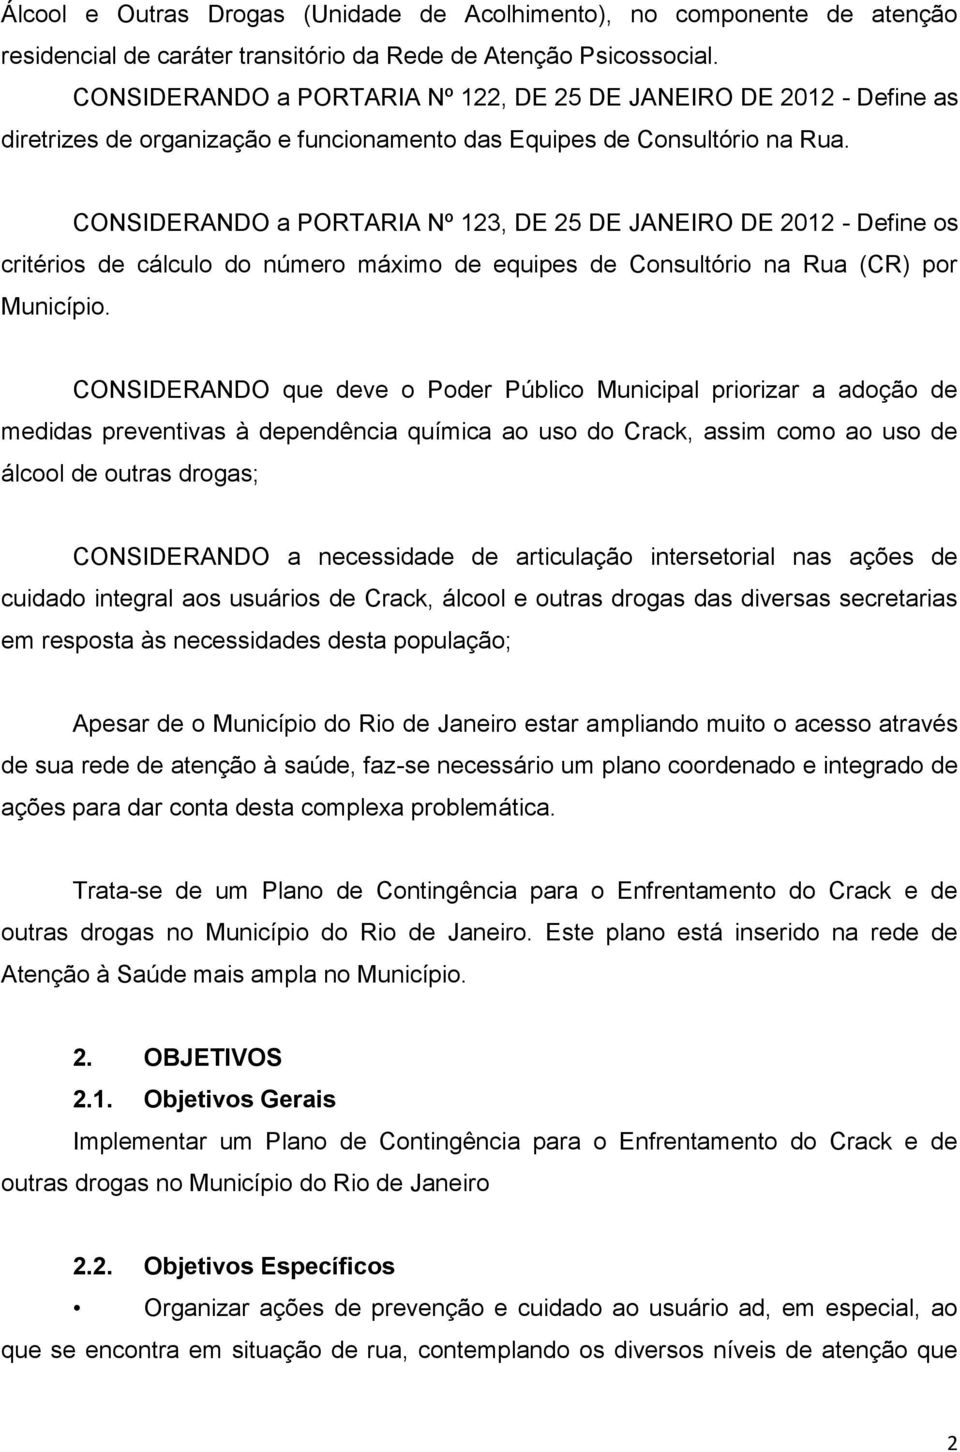 CONSIDERANDO a PORTARIA Nº 123, DE 25 DE JANEIRO DE 2012 - Define os critérios de cálculo do número máximo de equipes de Consultório na Rua (CR) por Município.